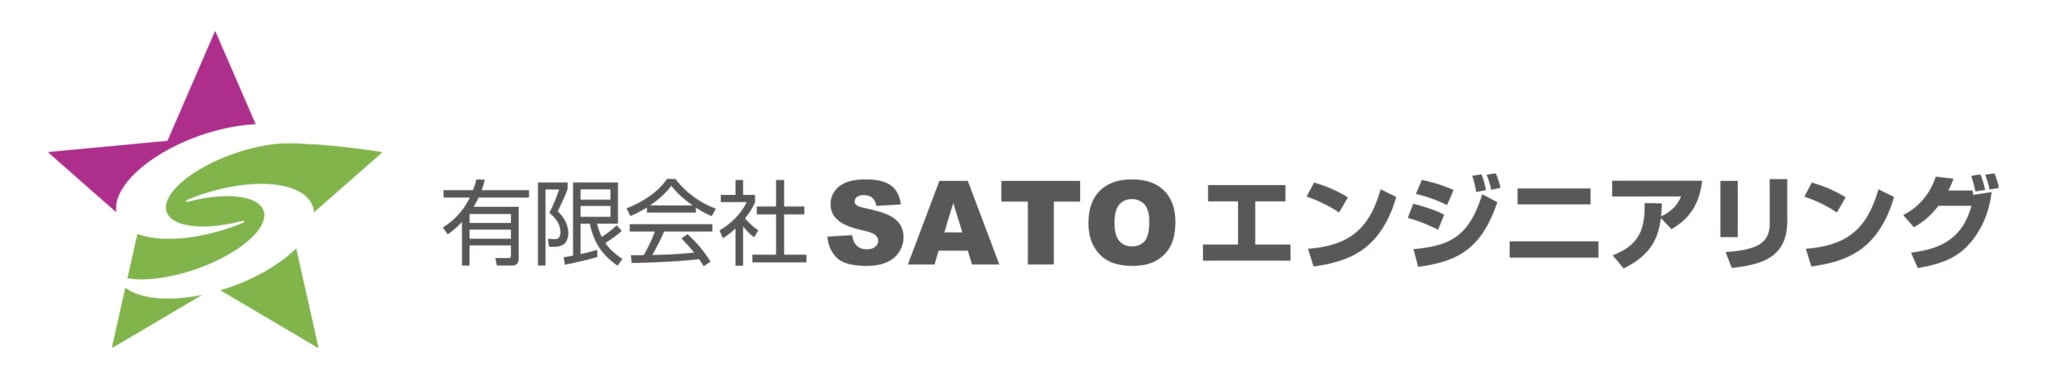 有限会社 SATOエンジニアリングのホームページ